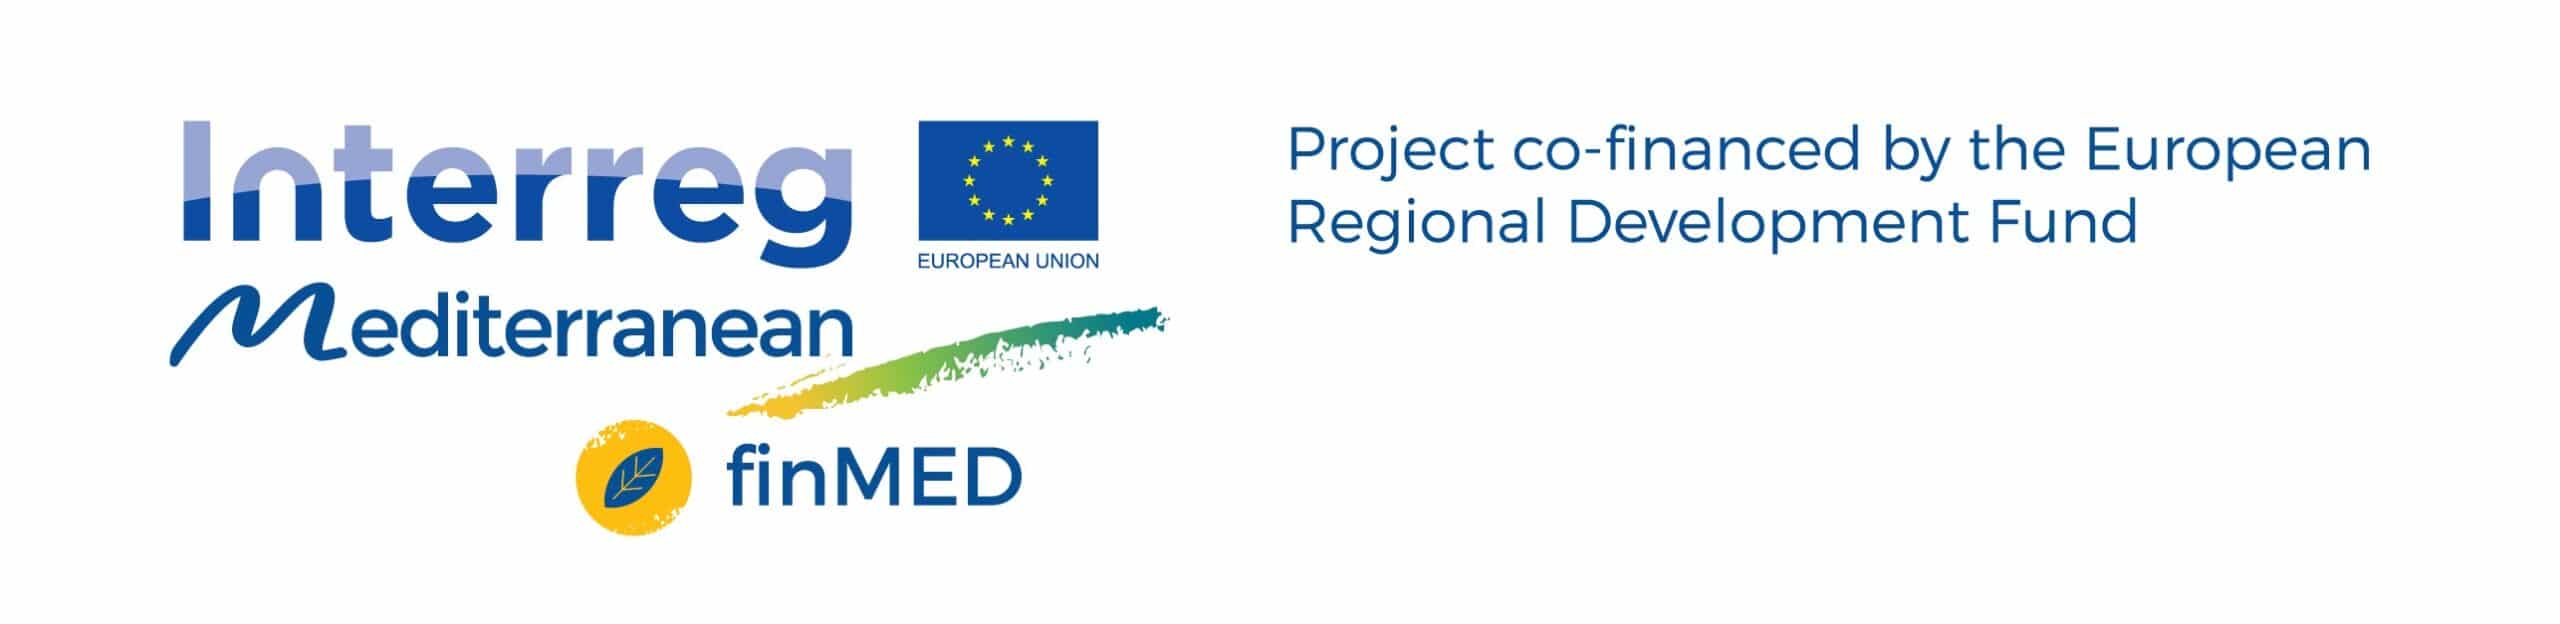 LOGO ERDF finMED En scaled finMED célja, hogy növelje a zöld innováció finanszírozását